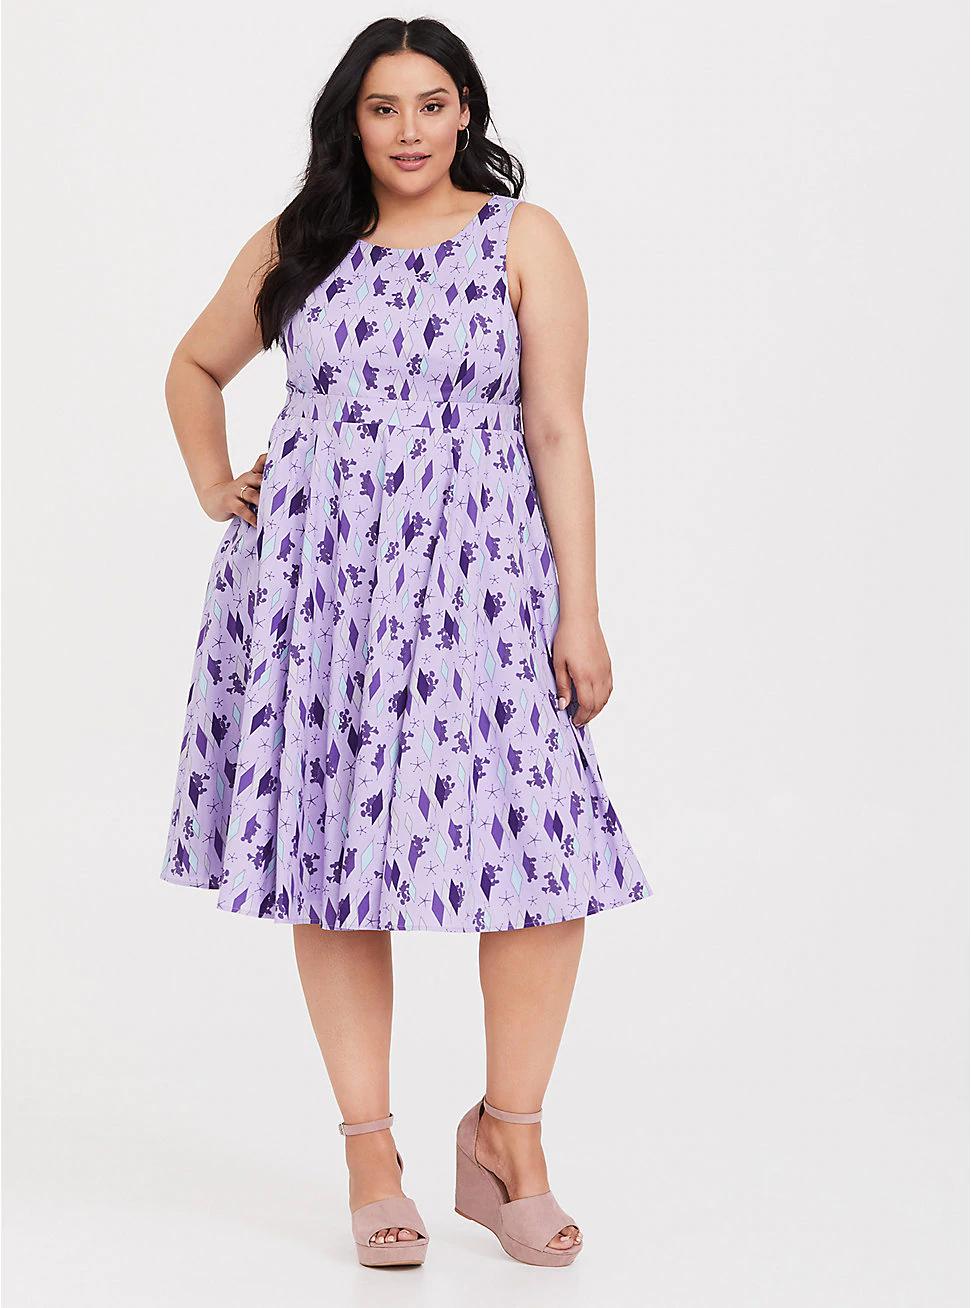 purple swing dress